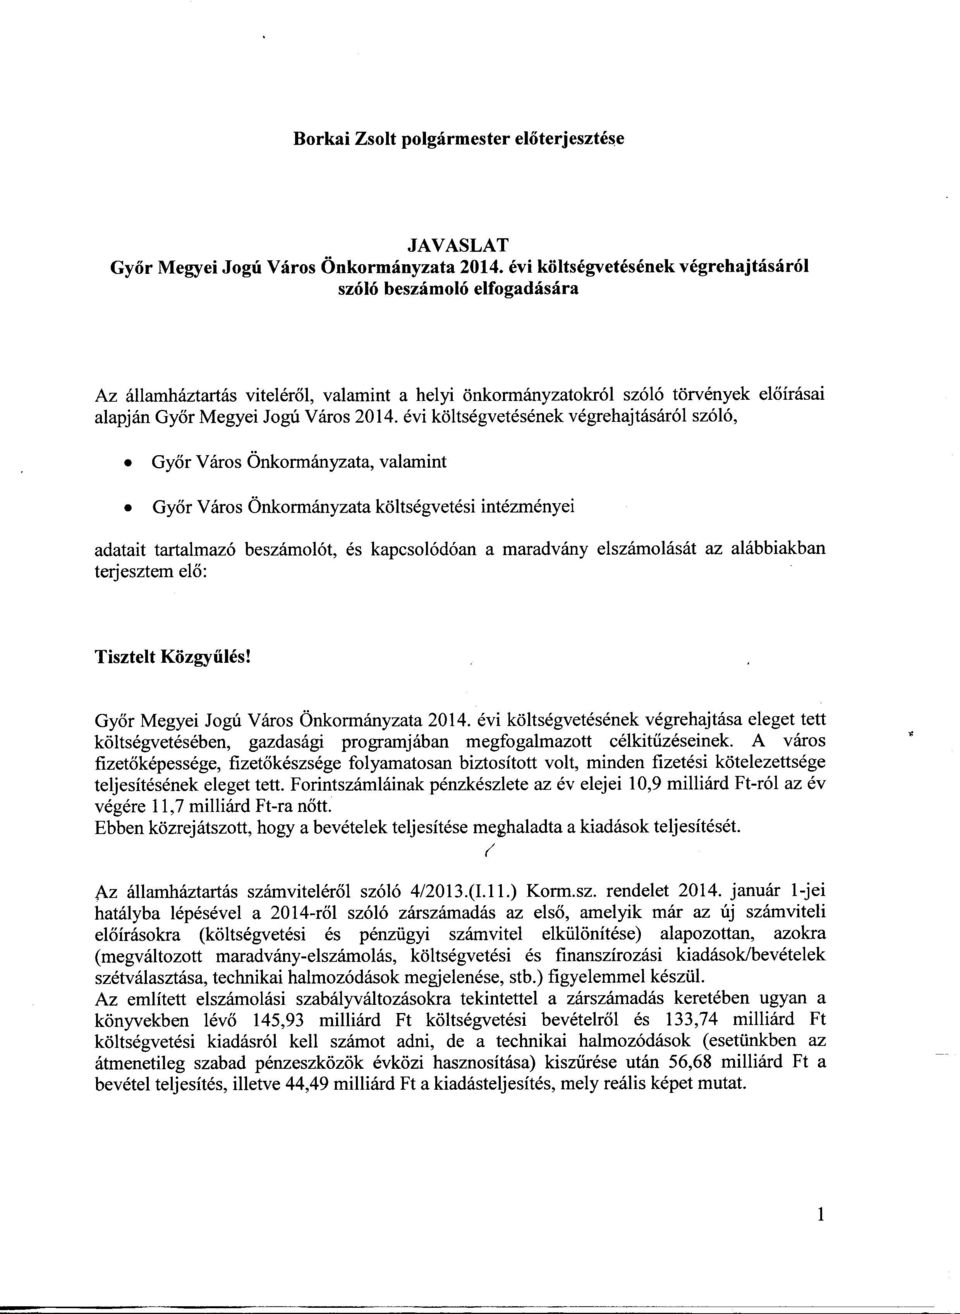 évi költségvetésének végrehajtásáról szóló, Győr Város Önkormányzata, valamint Győr Város Önkormányzata költségvetési intézményei adatait tartalmazó beszámolót, és kapcsolódóan a maradvány